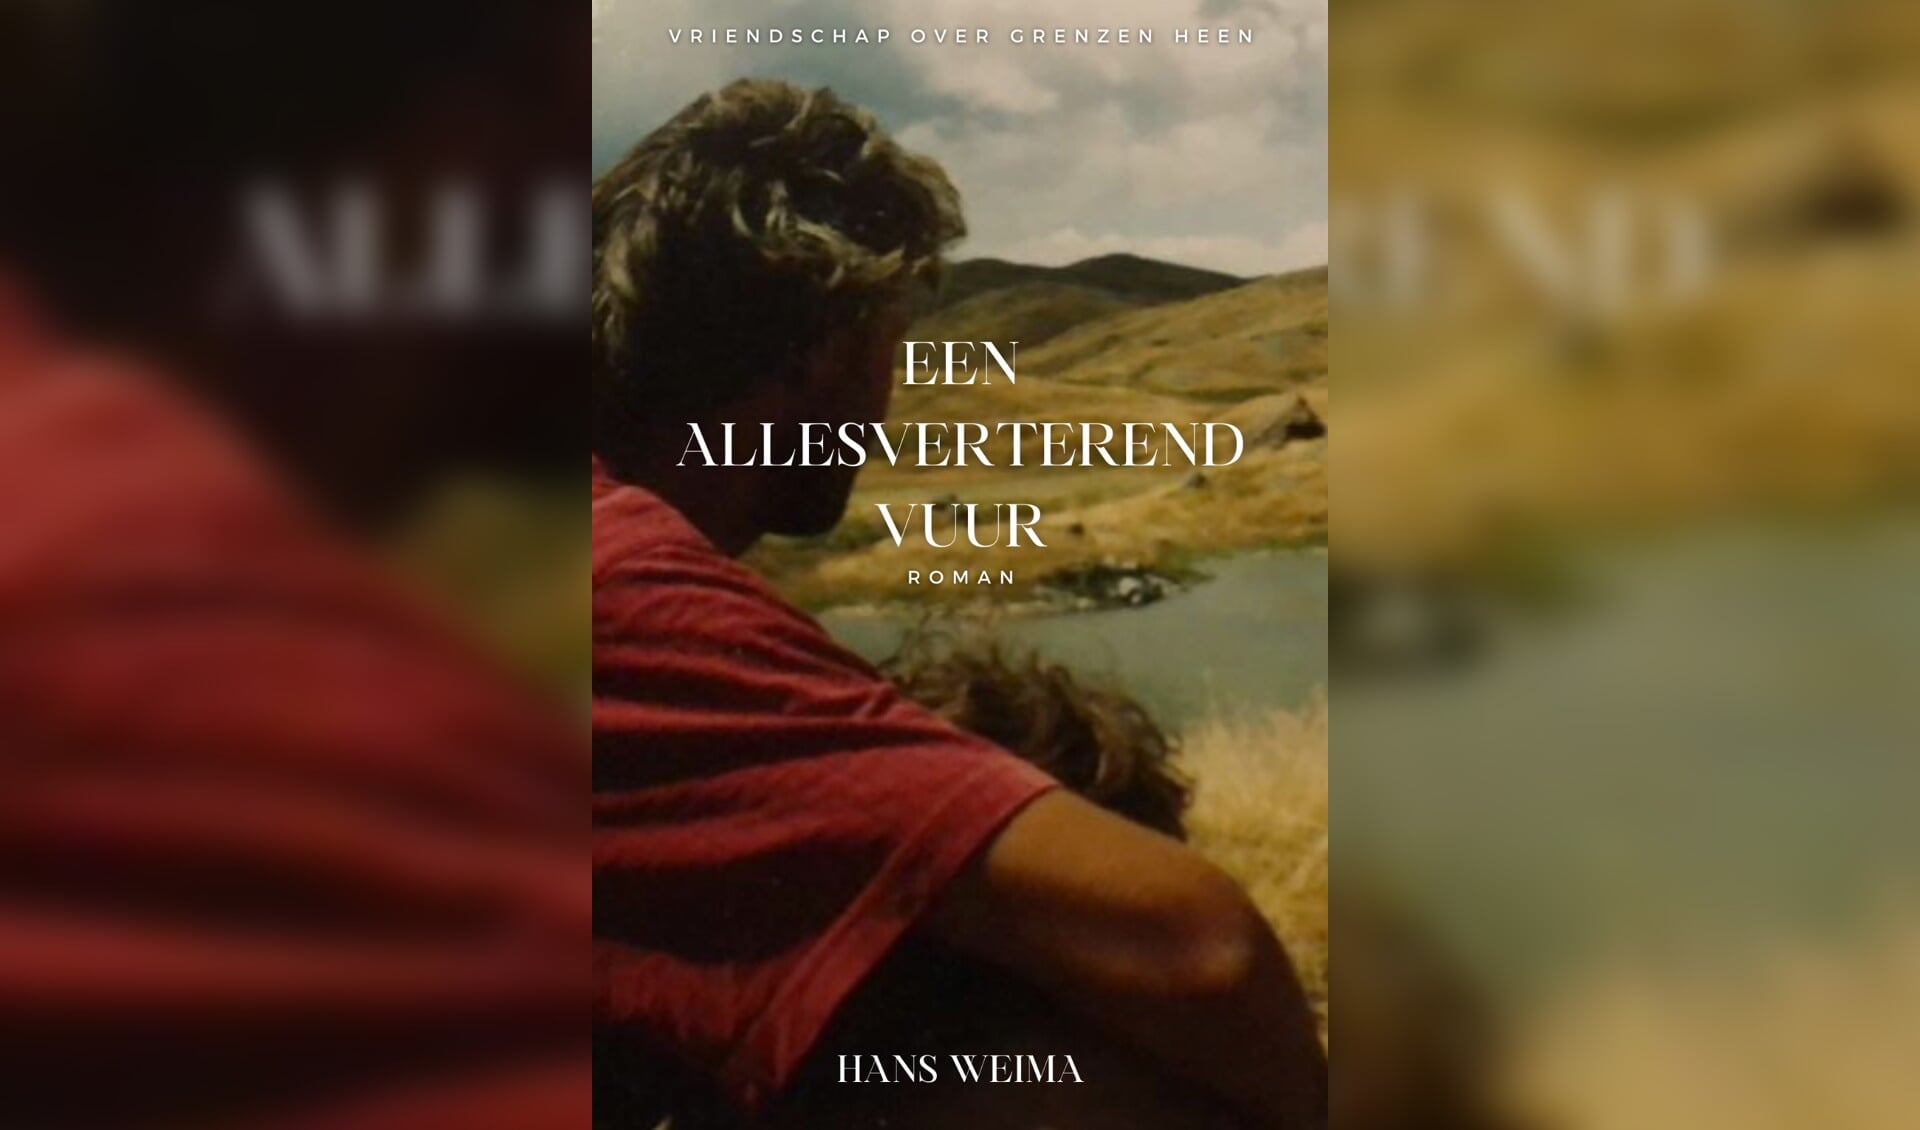 De roman 'Een allesverterend vuur' van Hans Weima. 